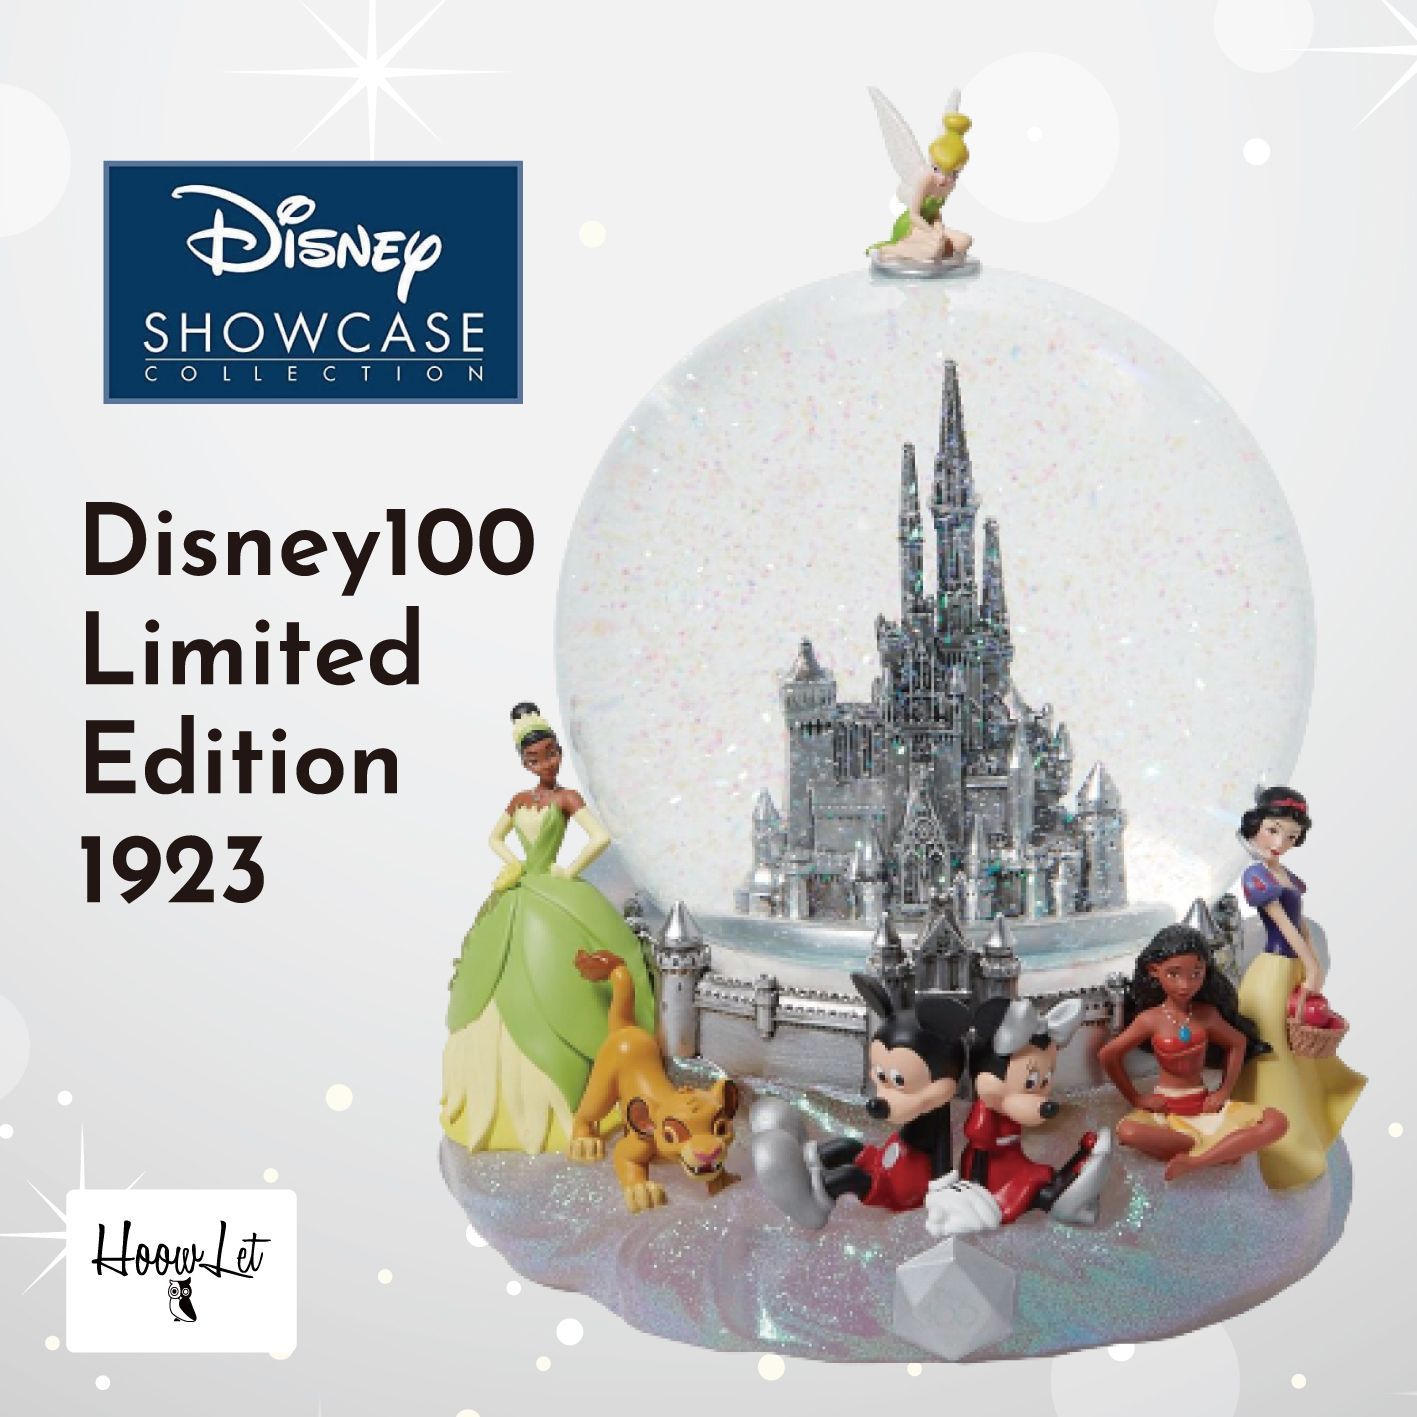 ディズニー 100周年 限定 Disney Showcase スノードーム Disney100 Limited Edition 1923 フィギュア  おしゃれ インテリア ディズニーショーケース 正規輸入品 プレゼント ギフト